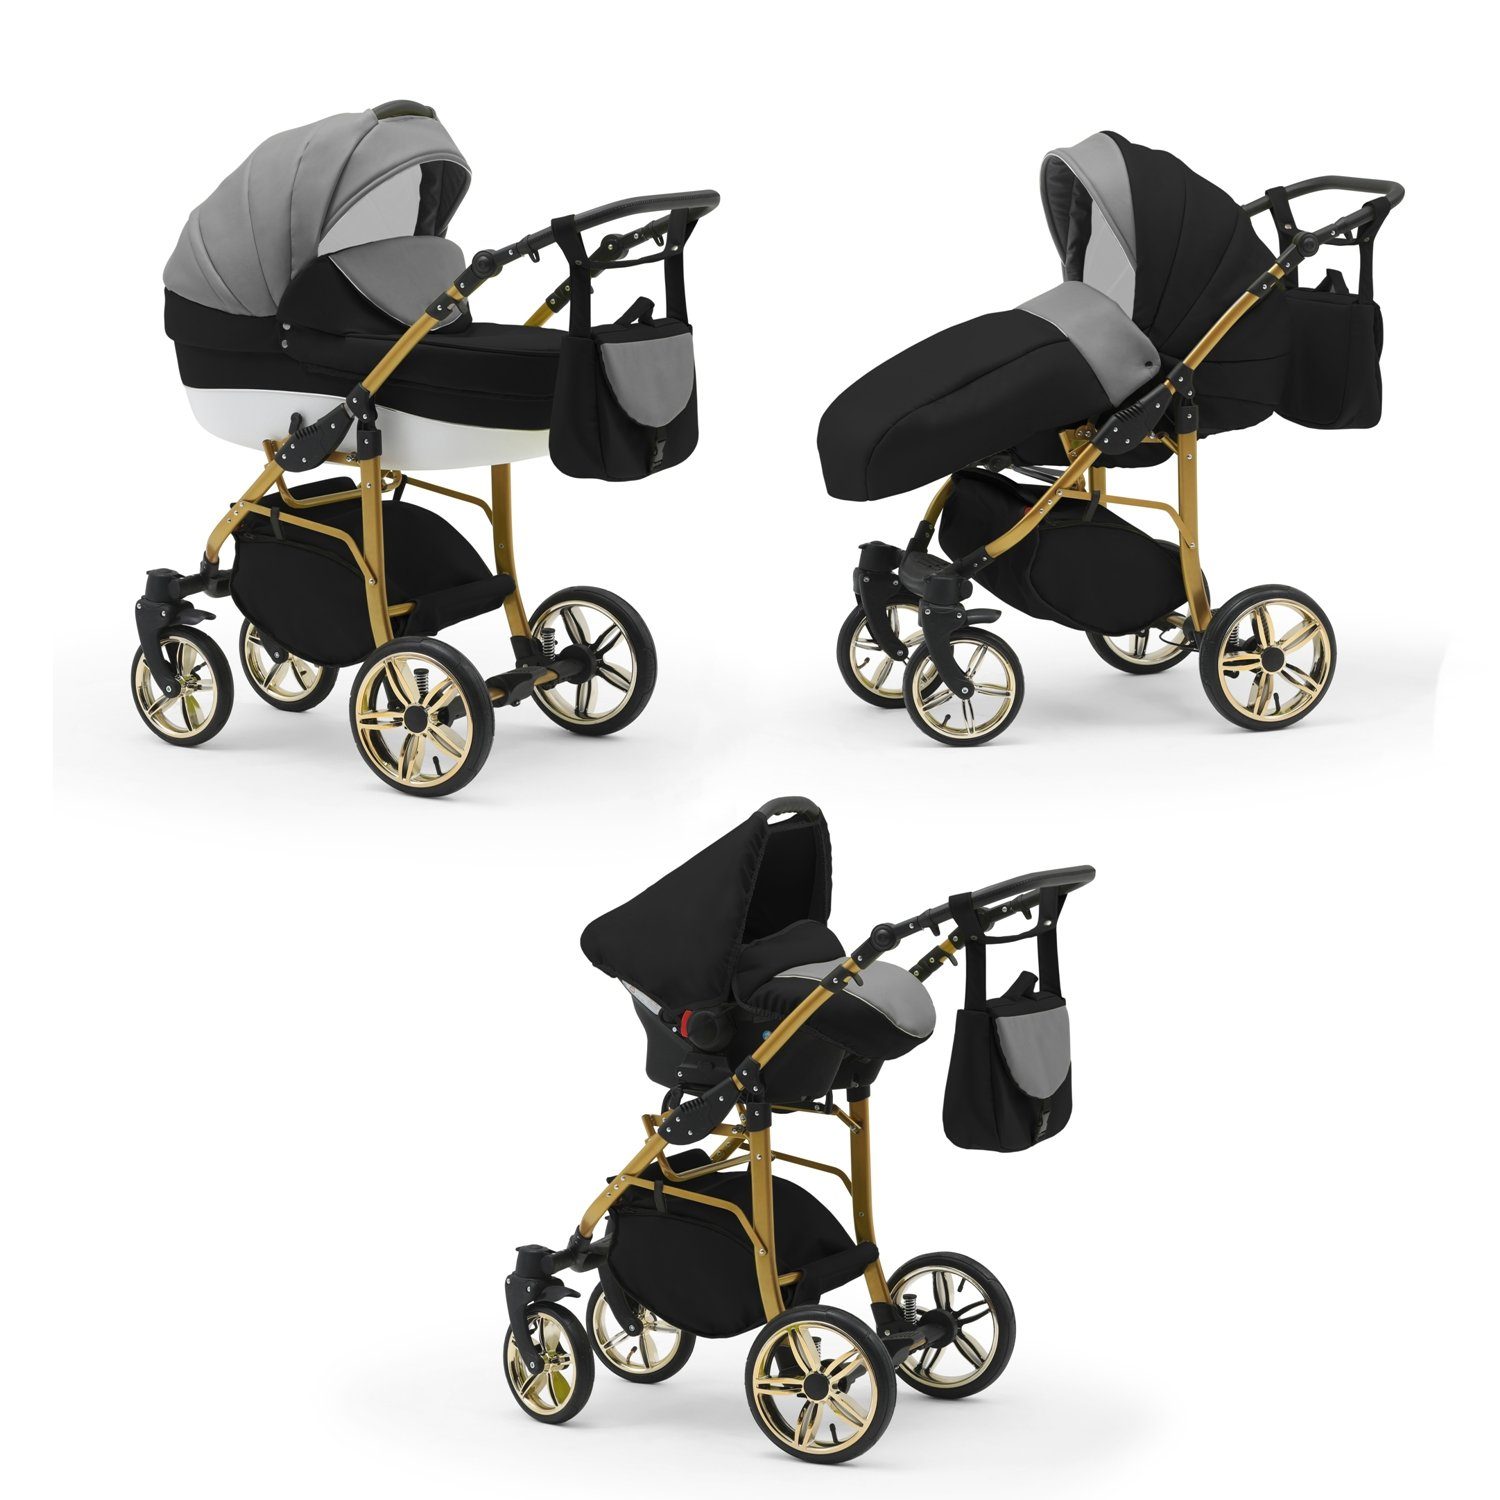 babies-on-wheels Kombi-Kinderwagen 3 in Grau-Schwarz-Weiß Farben Teile Cosmo - ECO 46 1 - Kinderwagen-Set 16 Gold in